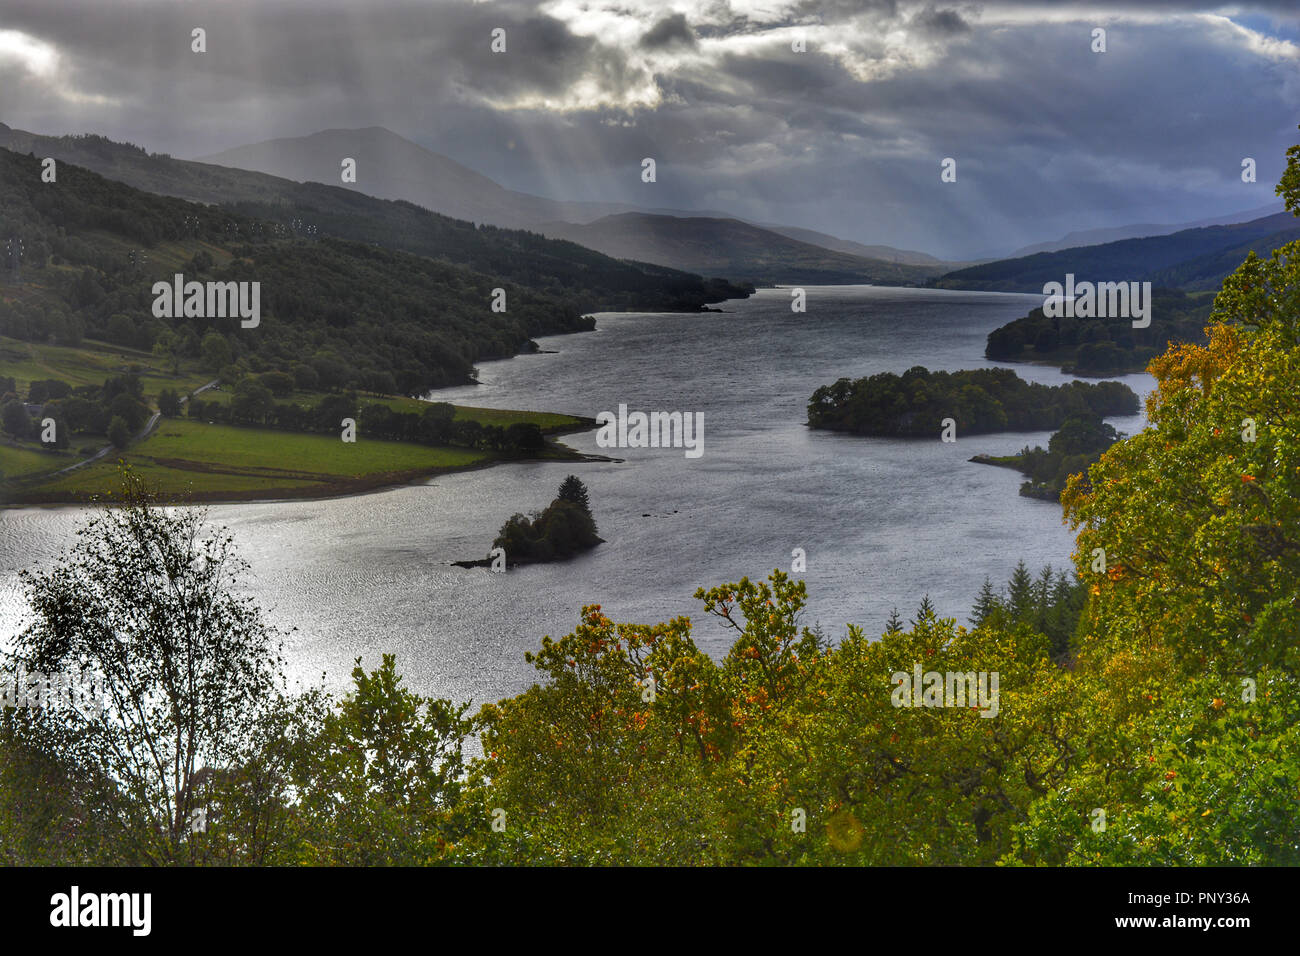 Loch Tummel de Queen's View, un famoso mirador mirando a lo largo de uno de los paisajes más emblemáticos de Escocia, Pitlochry, Perthshire. Foto de stock